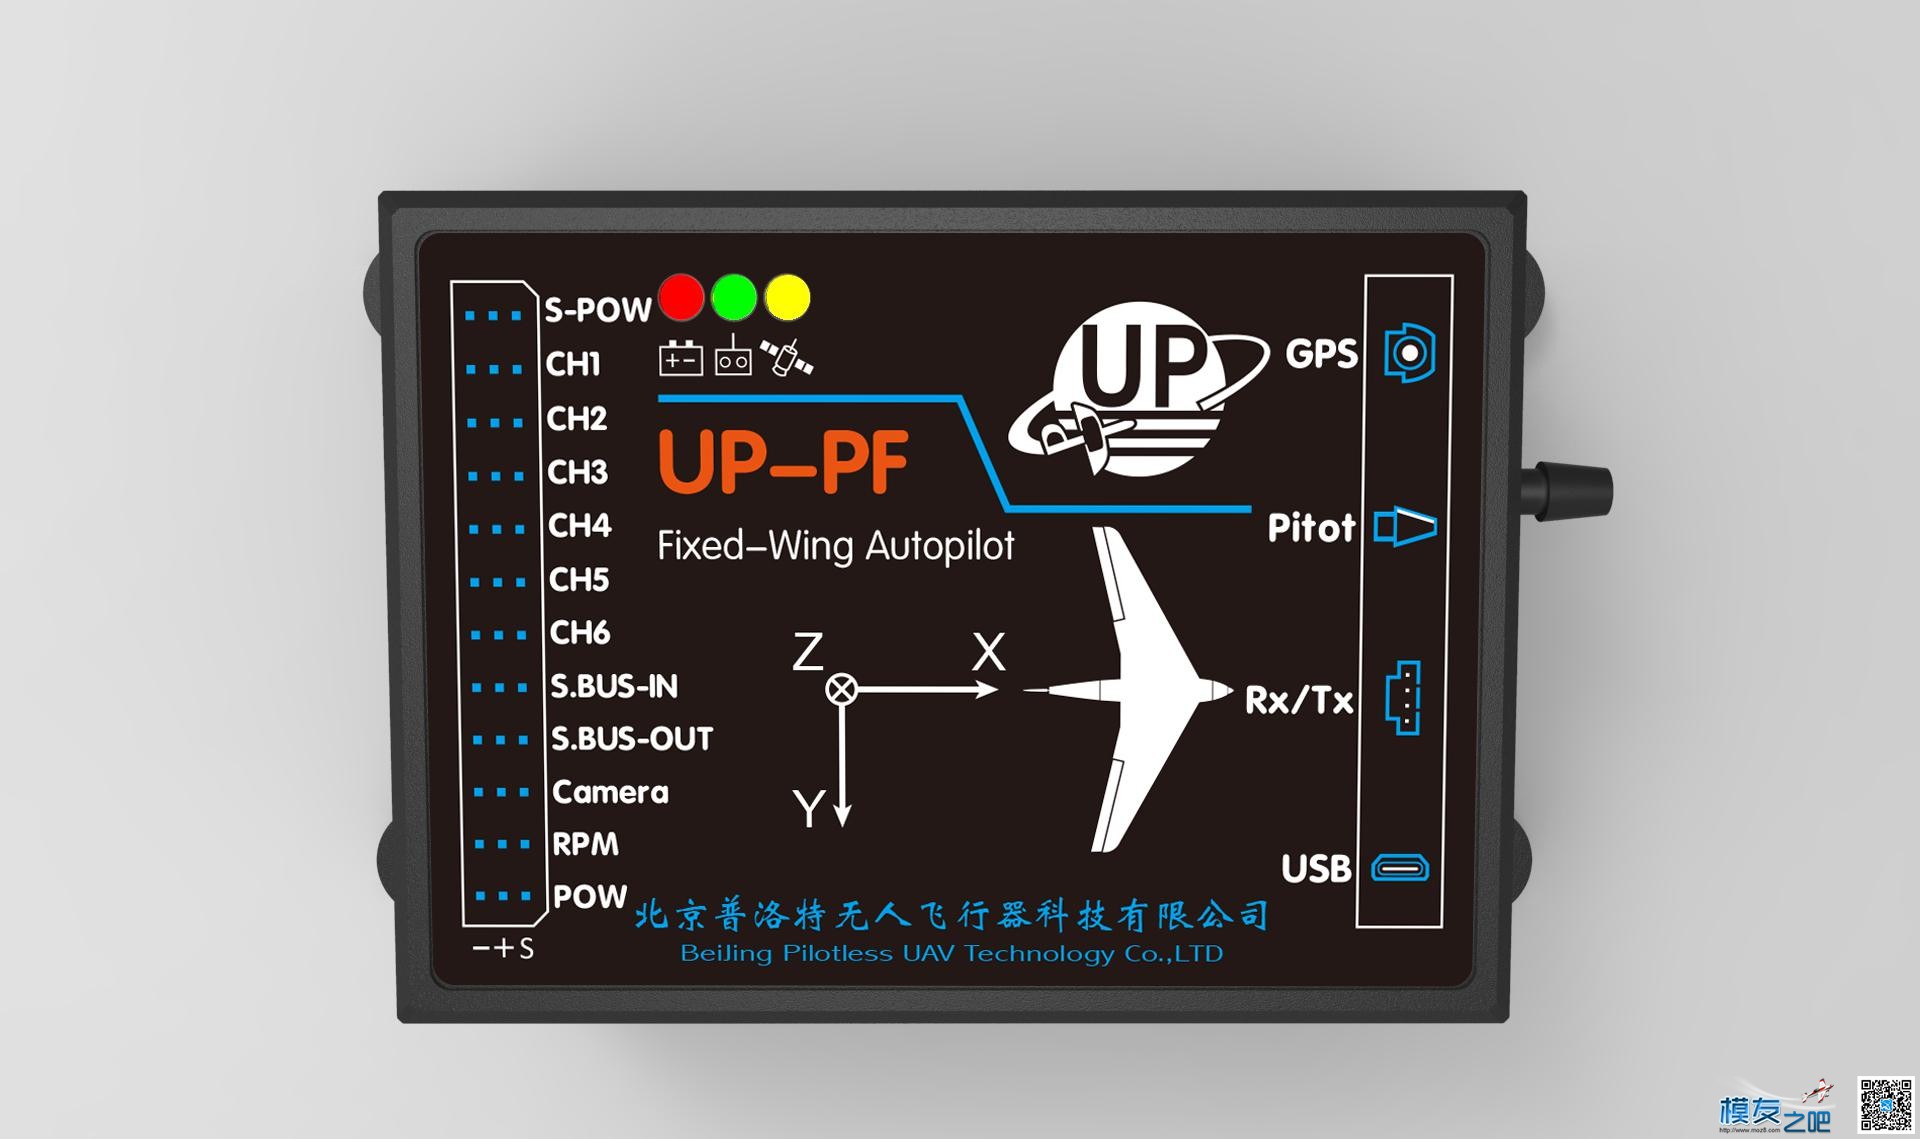 【蓝羽测评】普洛特UP-PF飞控，叼叼哒 无人机,固定翼,天线,舵机,飞控 作者:蓝羽 9847 